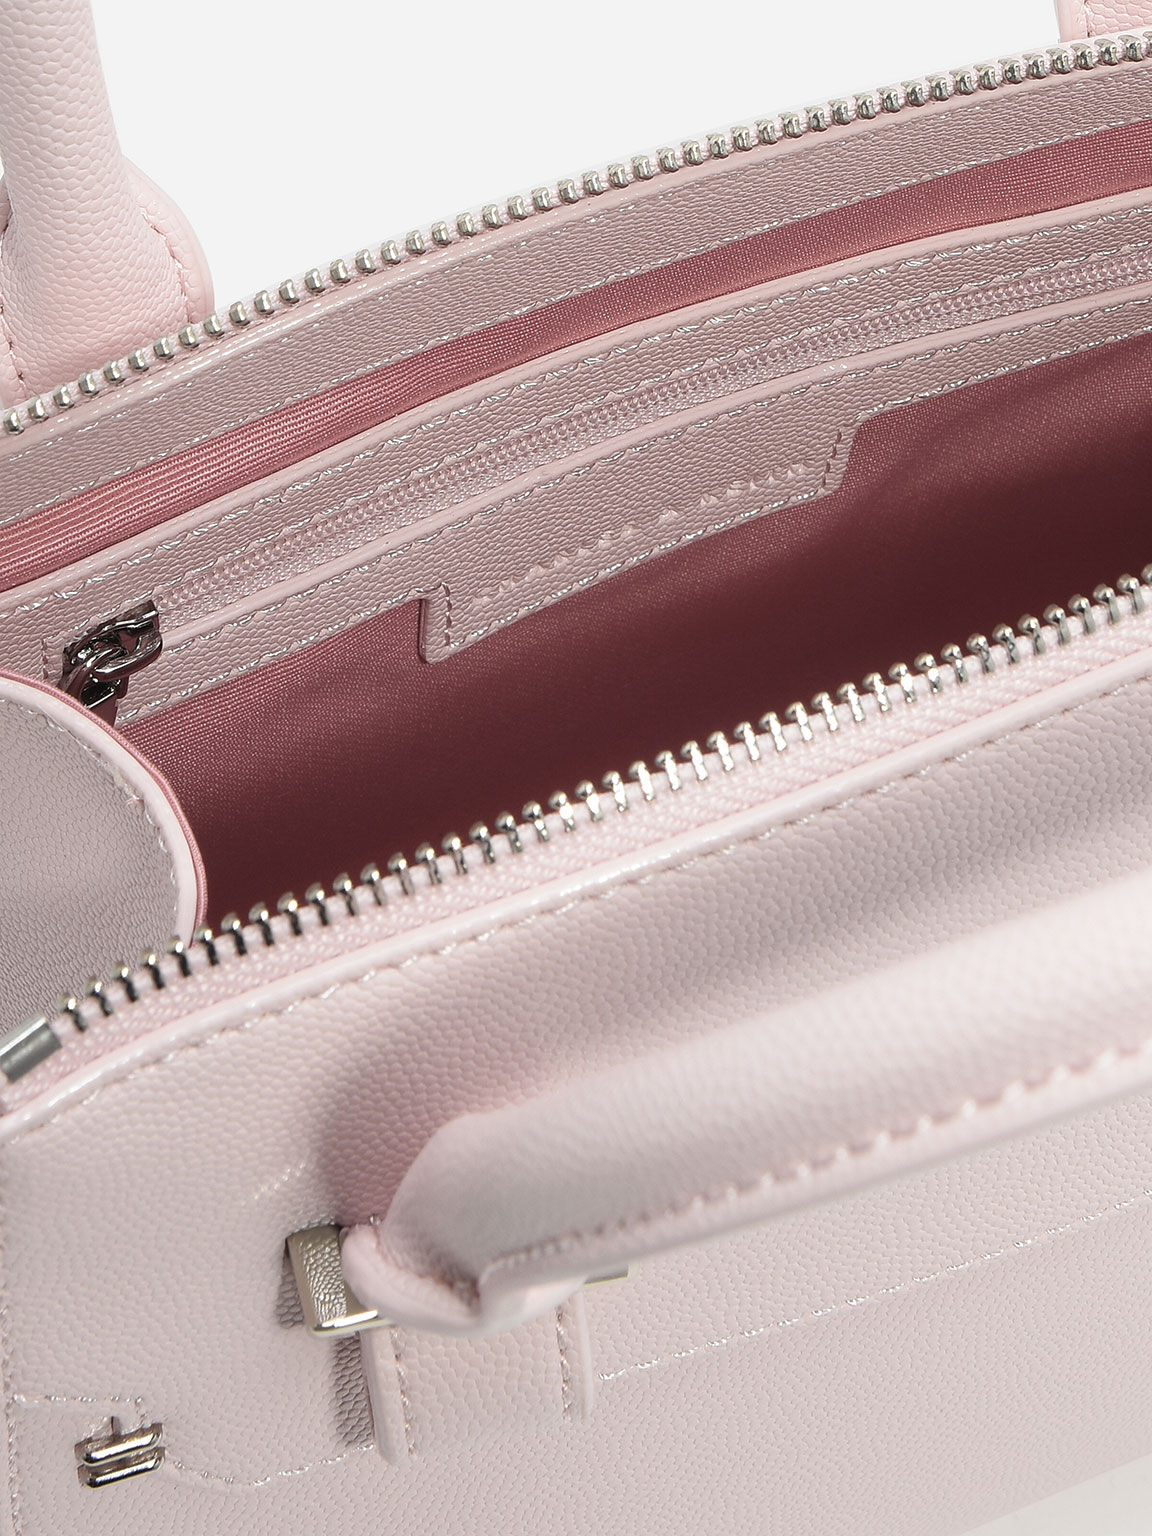 Structured Handbag, Pink, hi-res